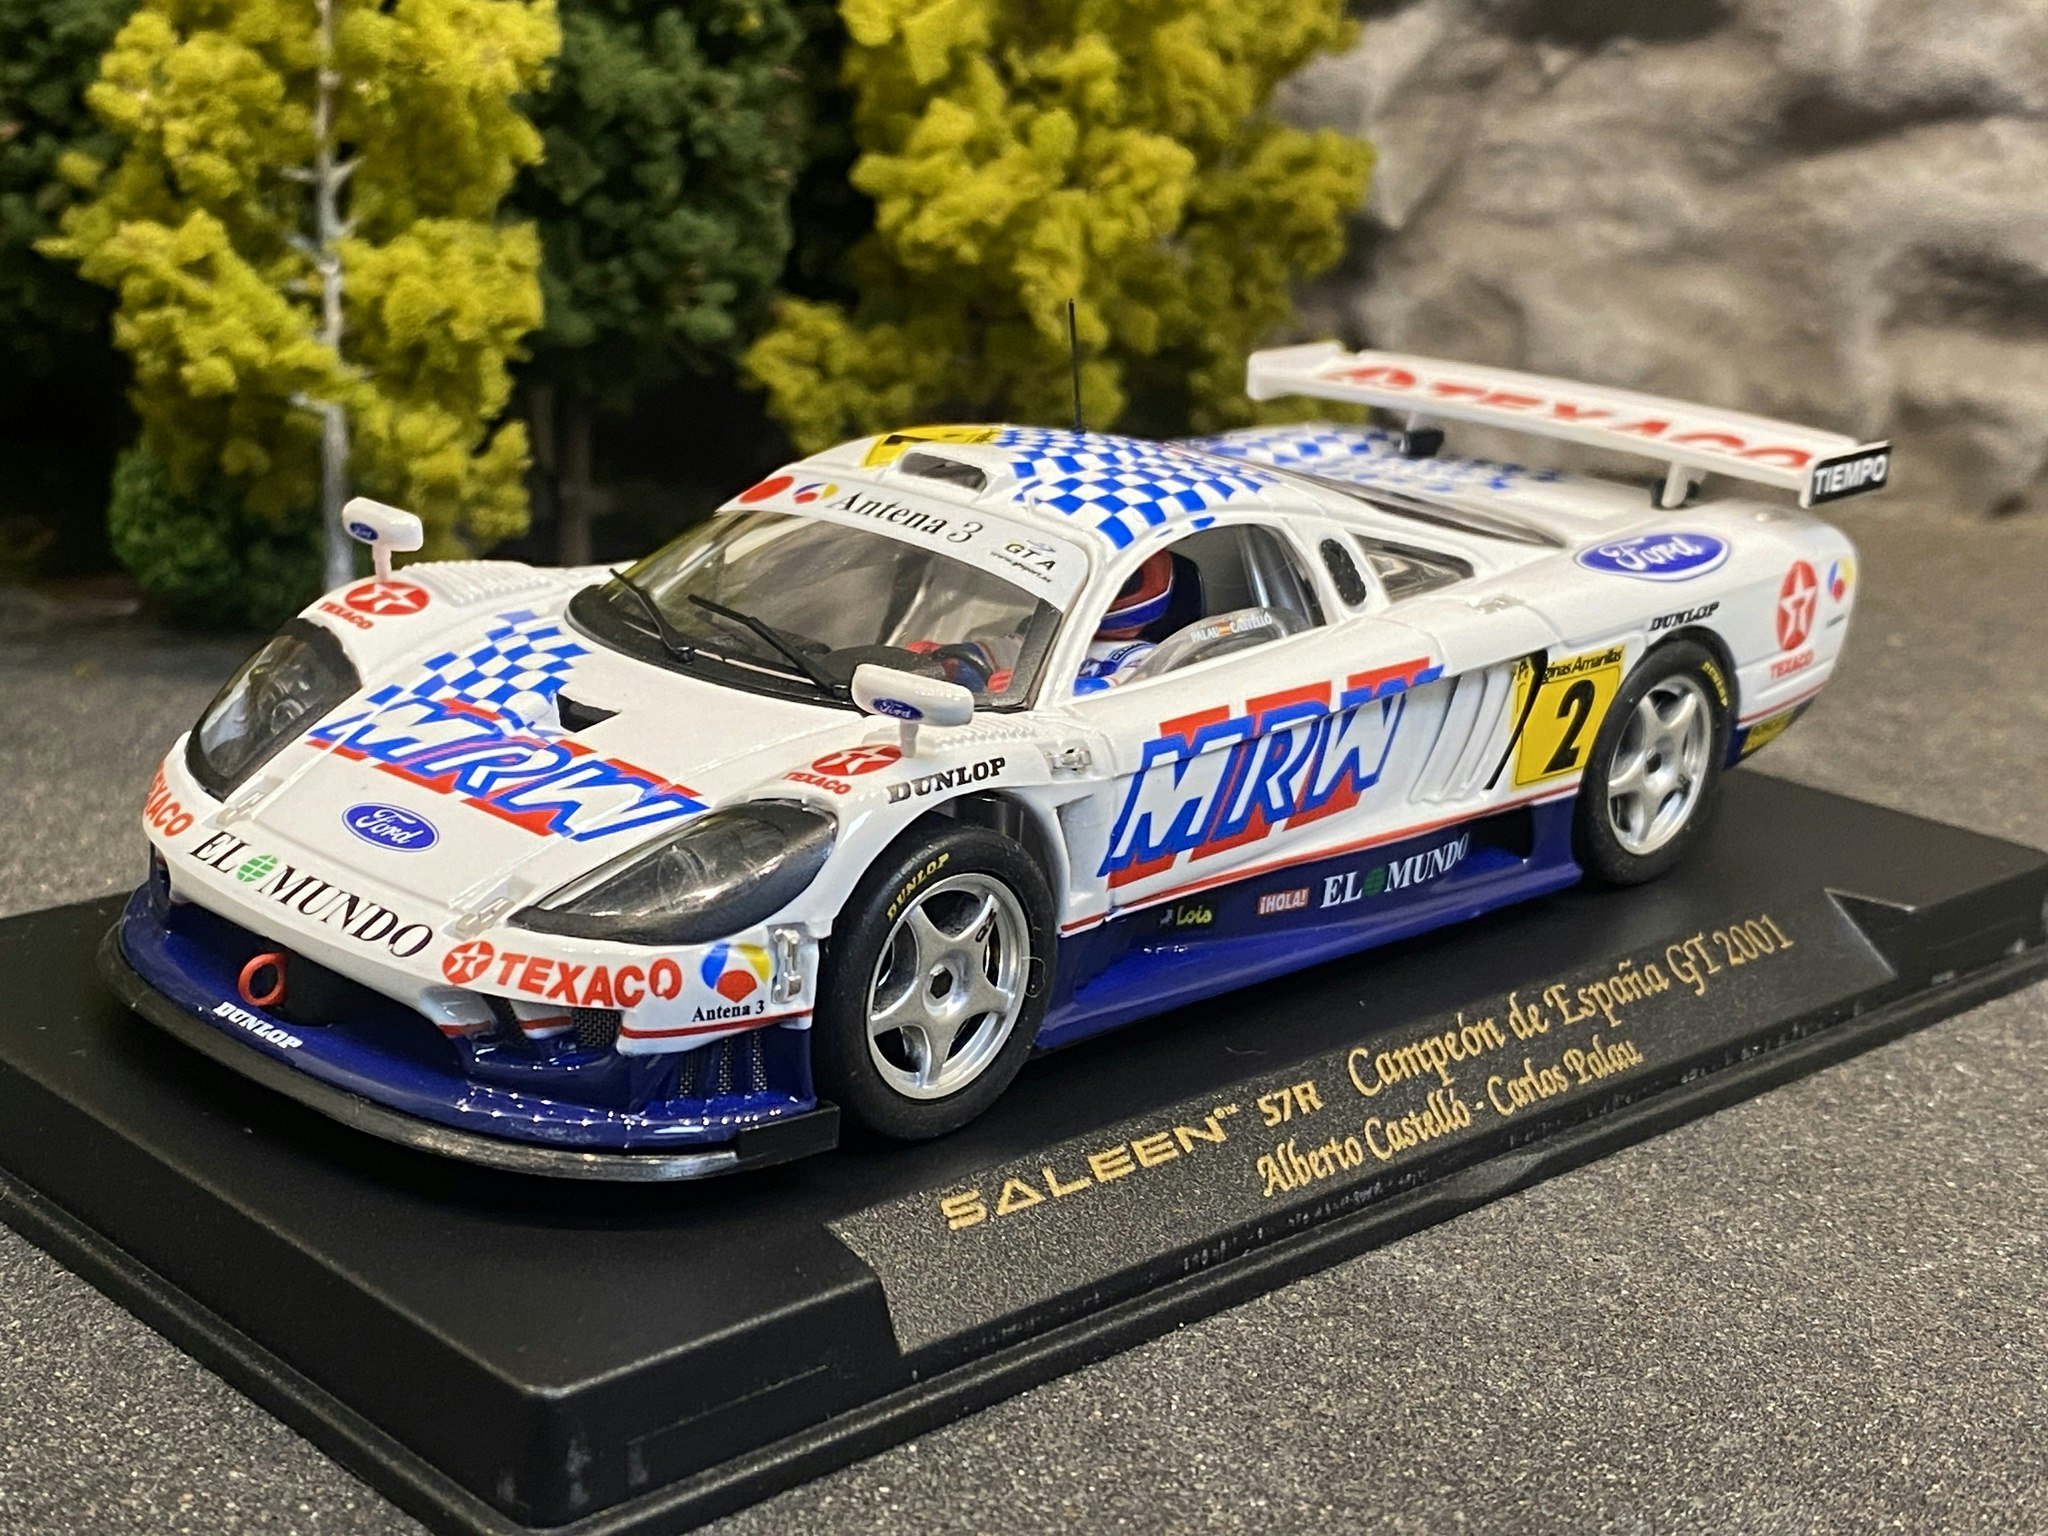 Scale 1/32 Analogue FLY slotcar: Saleen S7R #2, Campeón de Espana GT 2001